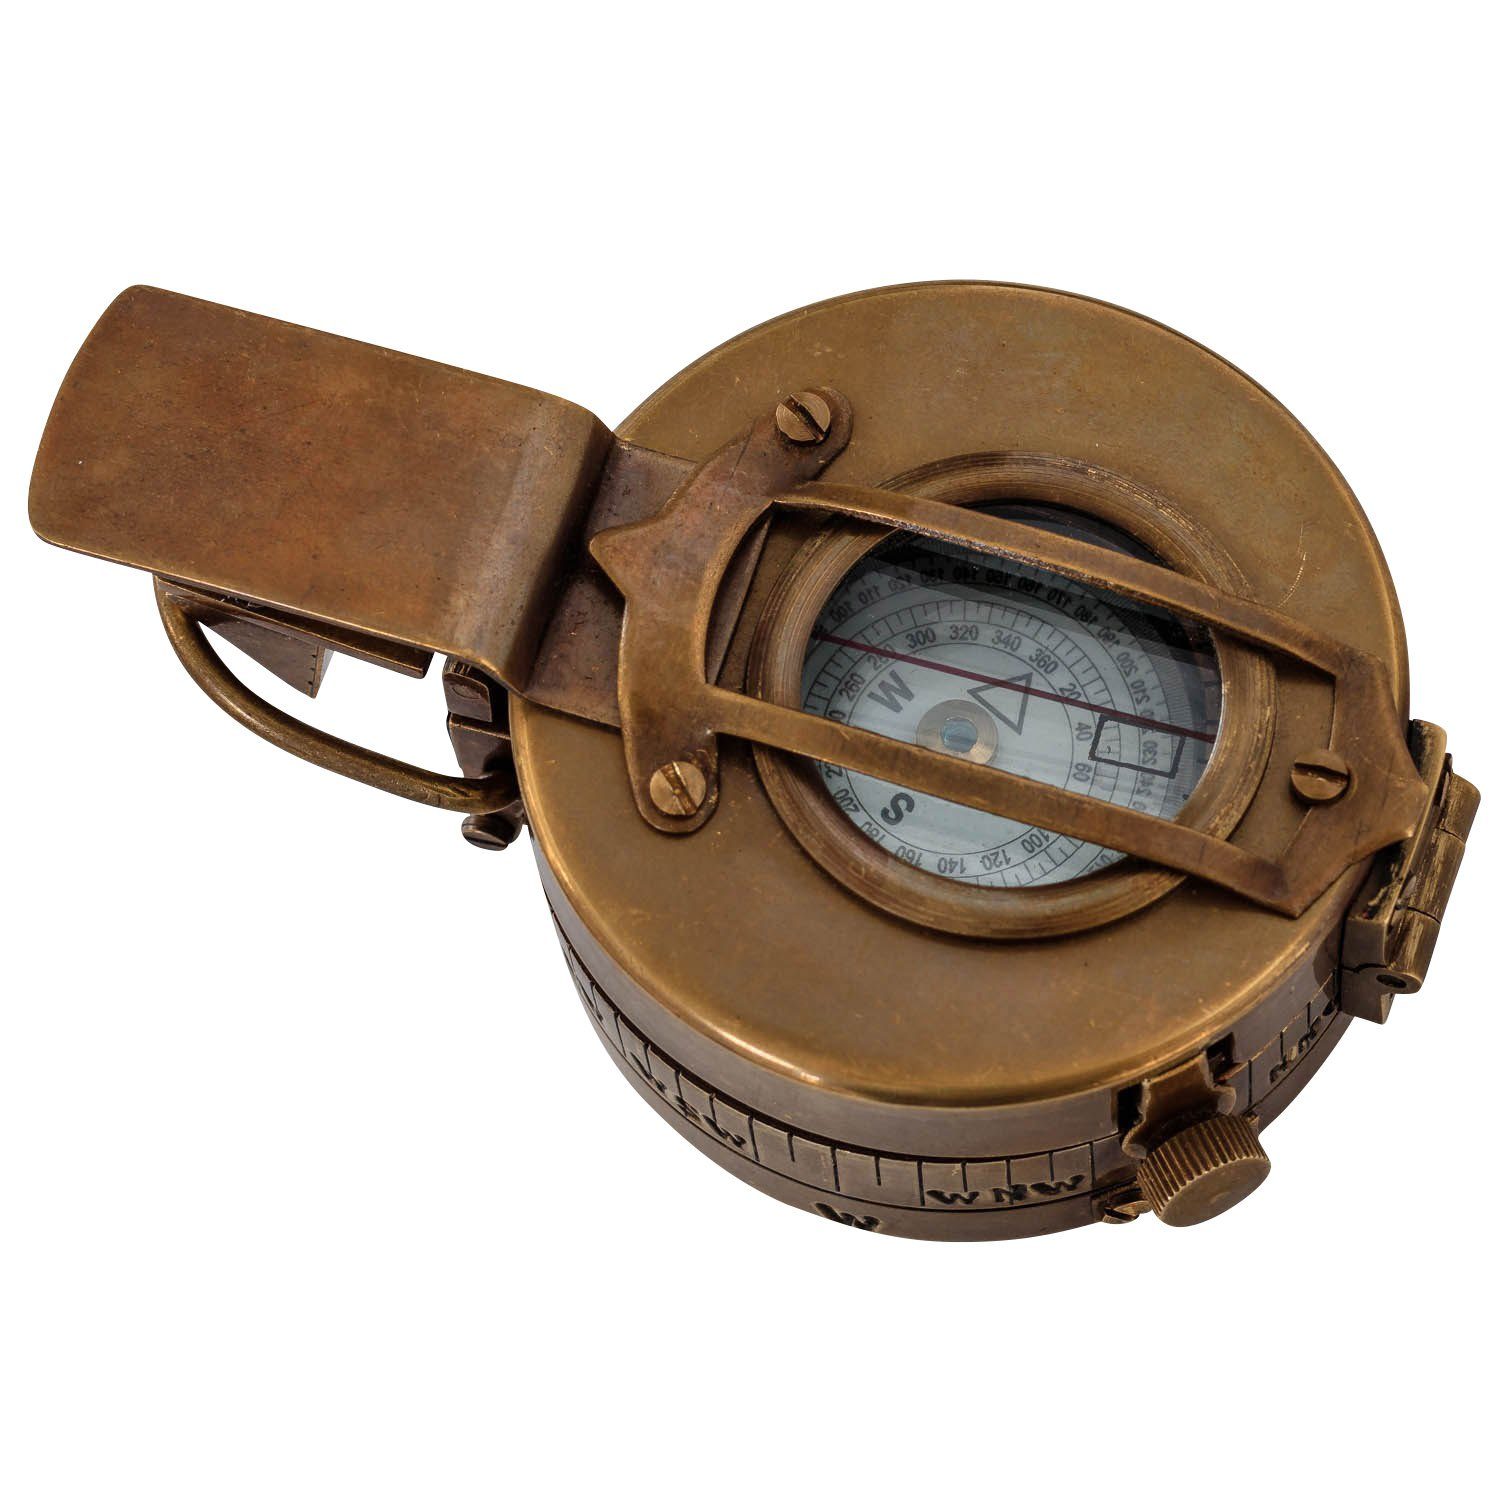 Kompass 11c Antik-Stil Messing Glas Navigation Aubaho - Kompass Schiff Replik Maritim